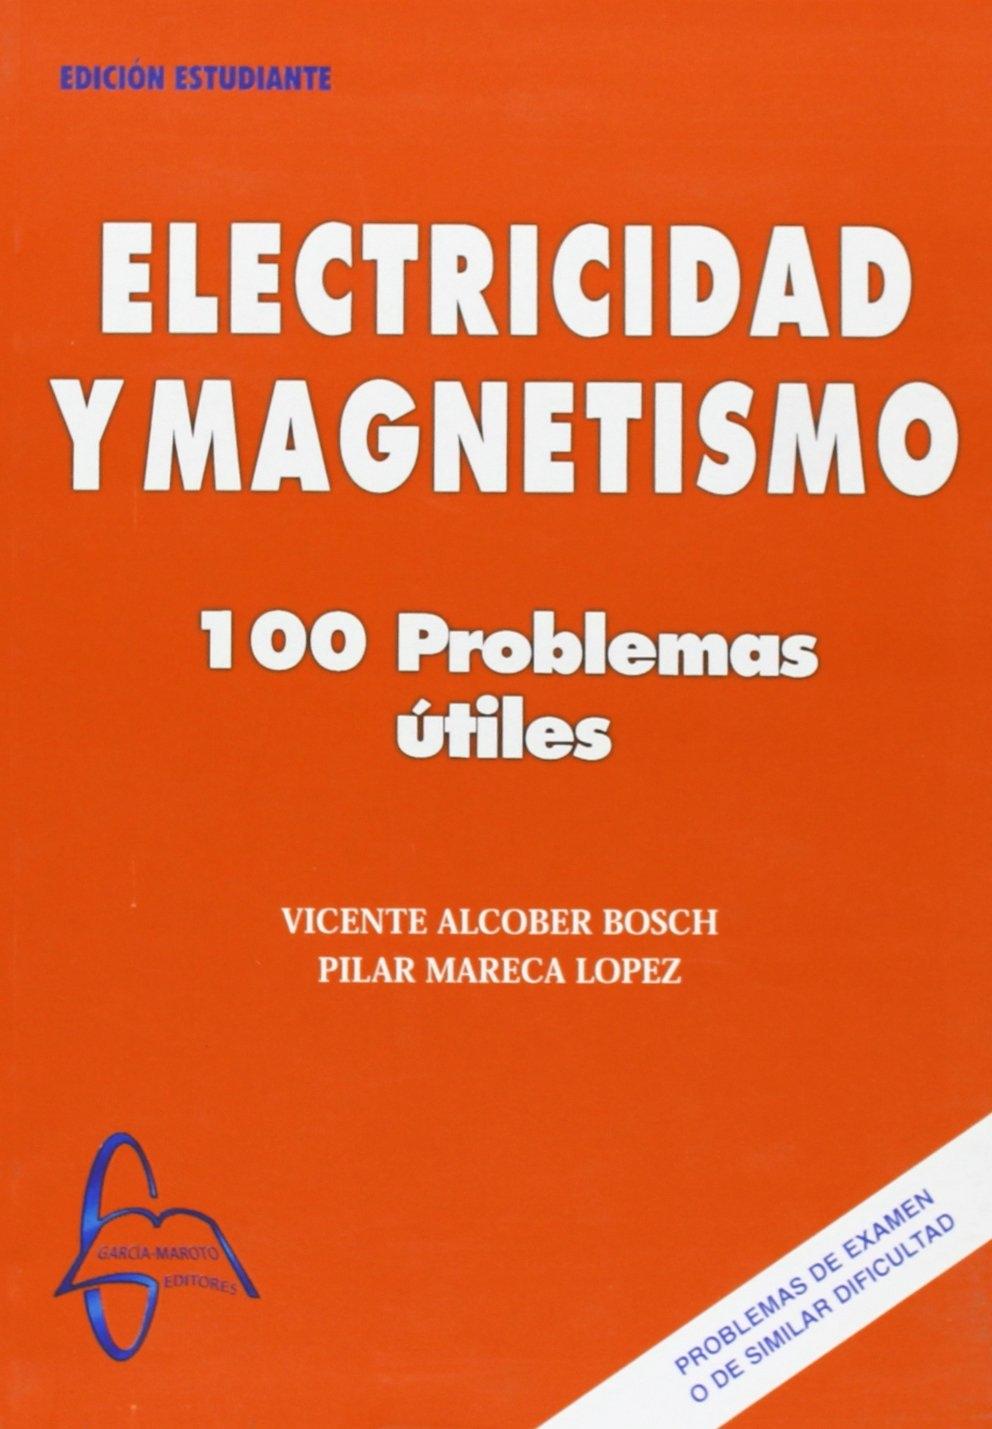 ELECTRICIDAD Y MAGNETISMO "100 PROBLEMAS ÚTILES". 